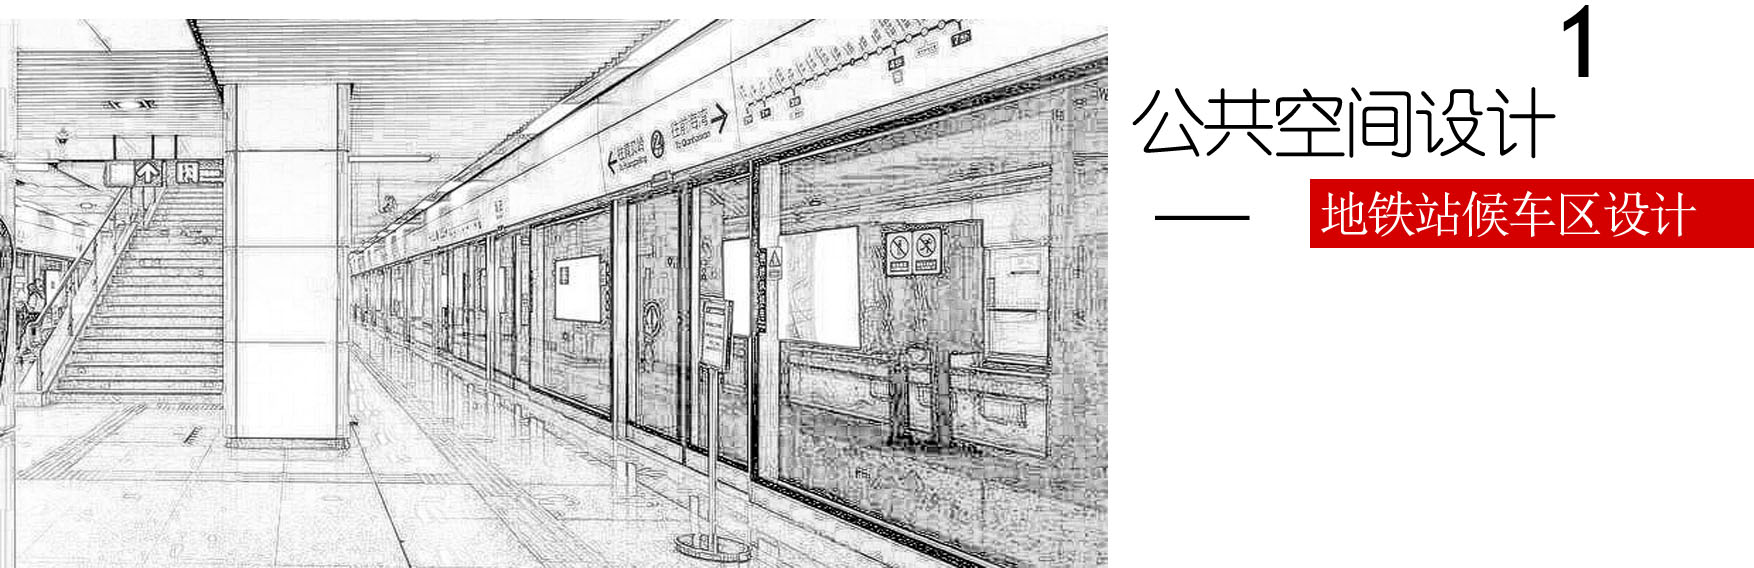 地铁站简笔画 简单图片